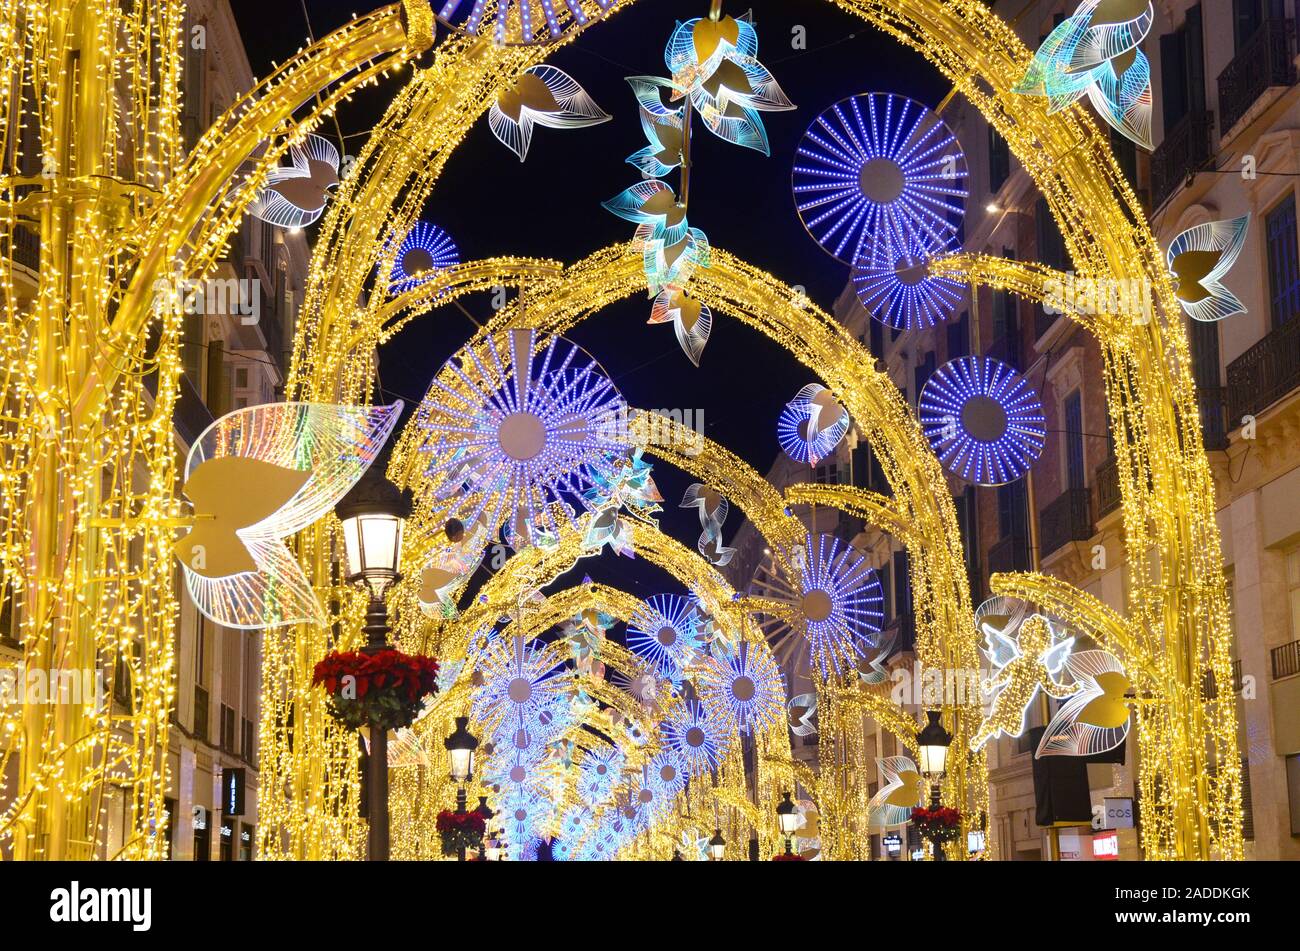 Calle Larios, la strada principale di Malaga, Spagna, durante il periodo di Natale 2019 Foto Stock